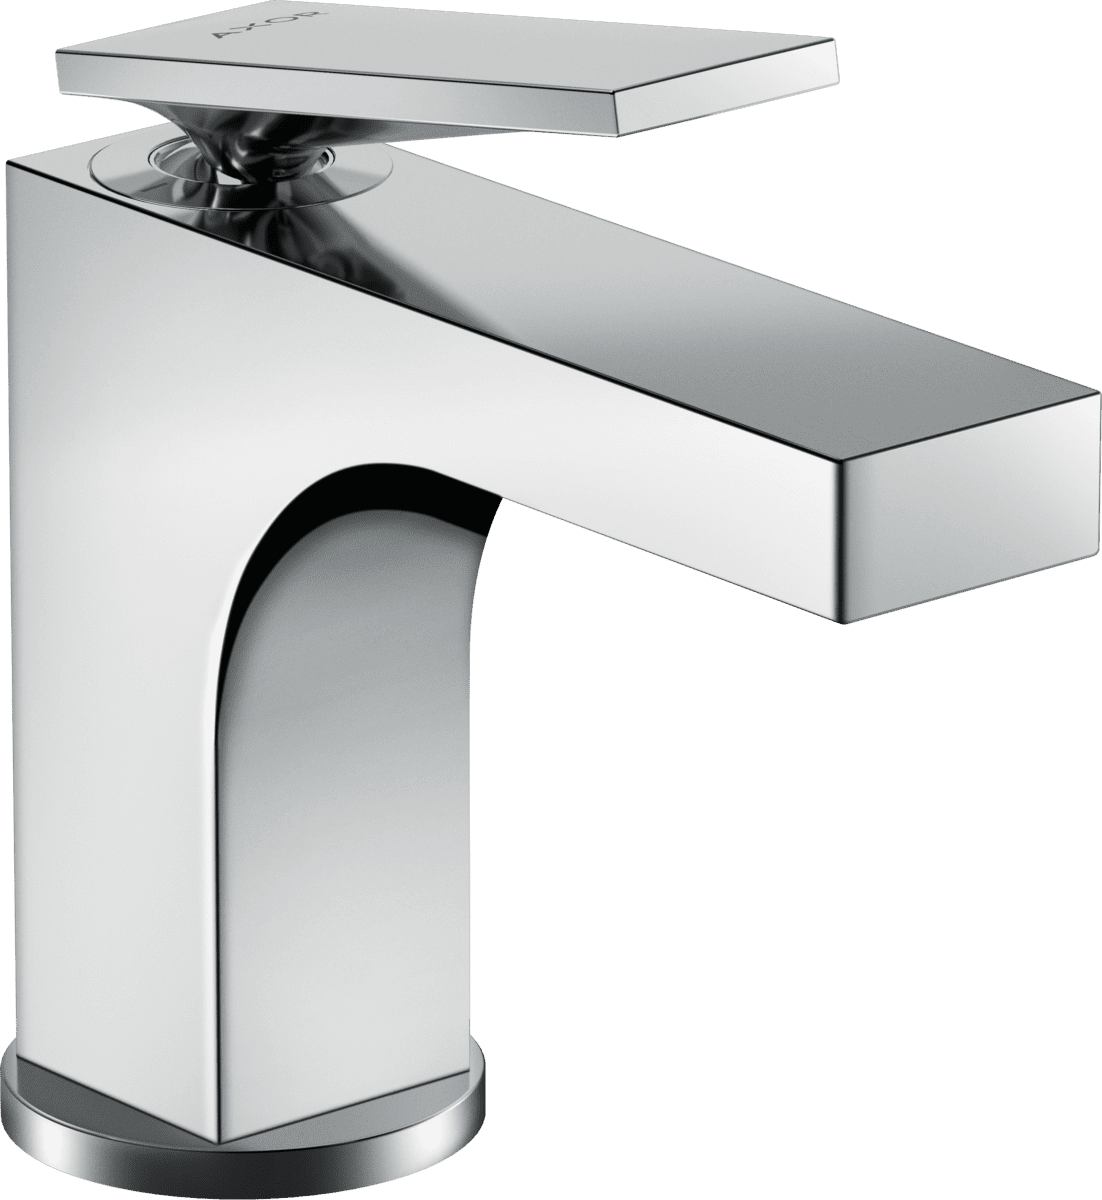 εικόνα του HANSGROHE AXOR Citterio Single lever basin mixer 90 with lever handle for hand wash basins with pop-up waste set #39022000 - Chrome